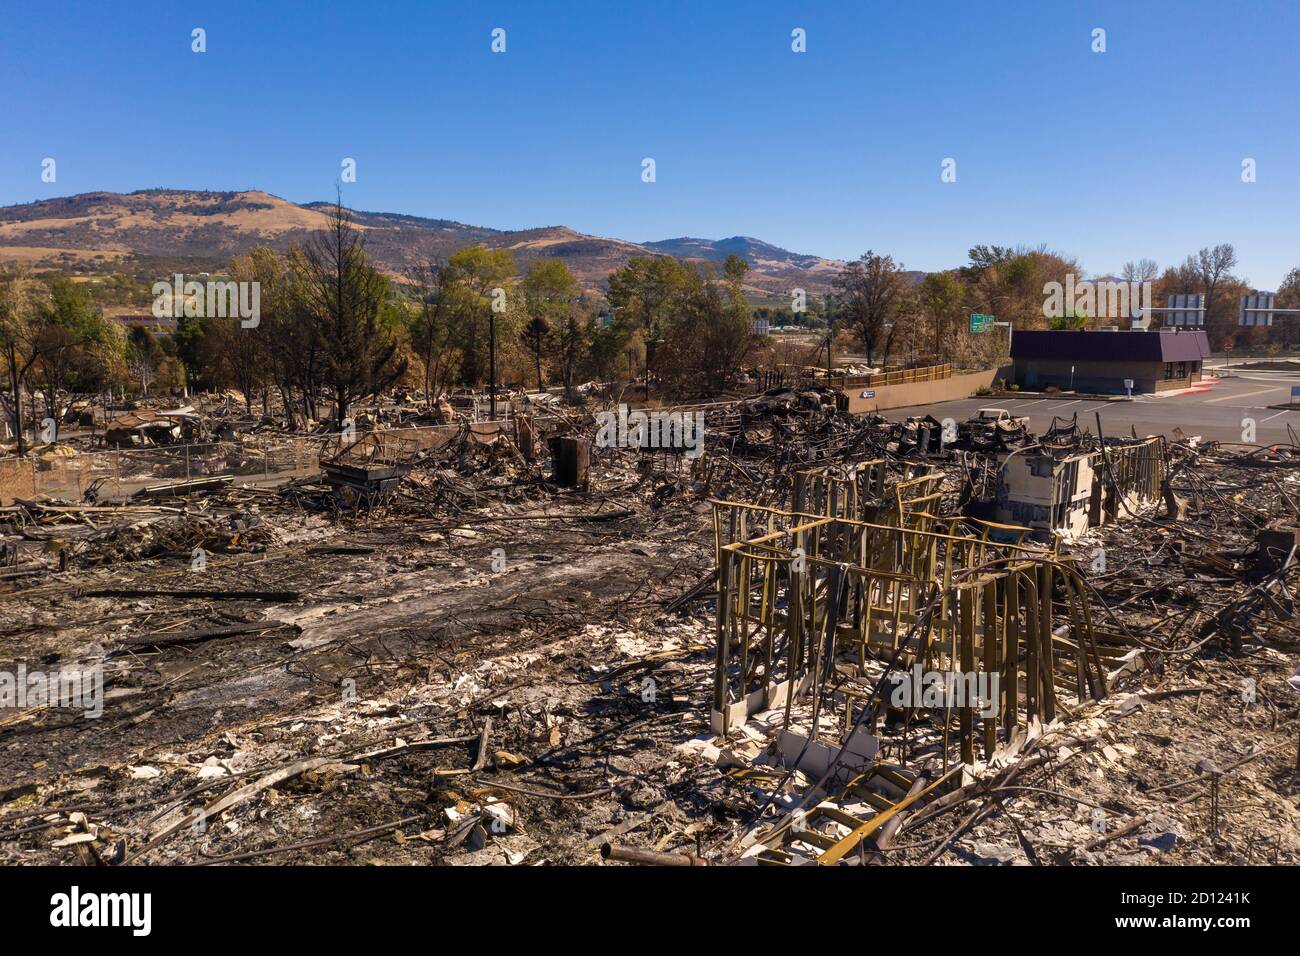 Verbrannte Tankstelle in Phoenix Talent Medford Oregon Gegend von Almeda Fire 2020 Stockfoto